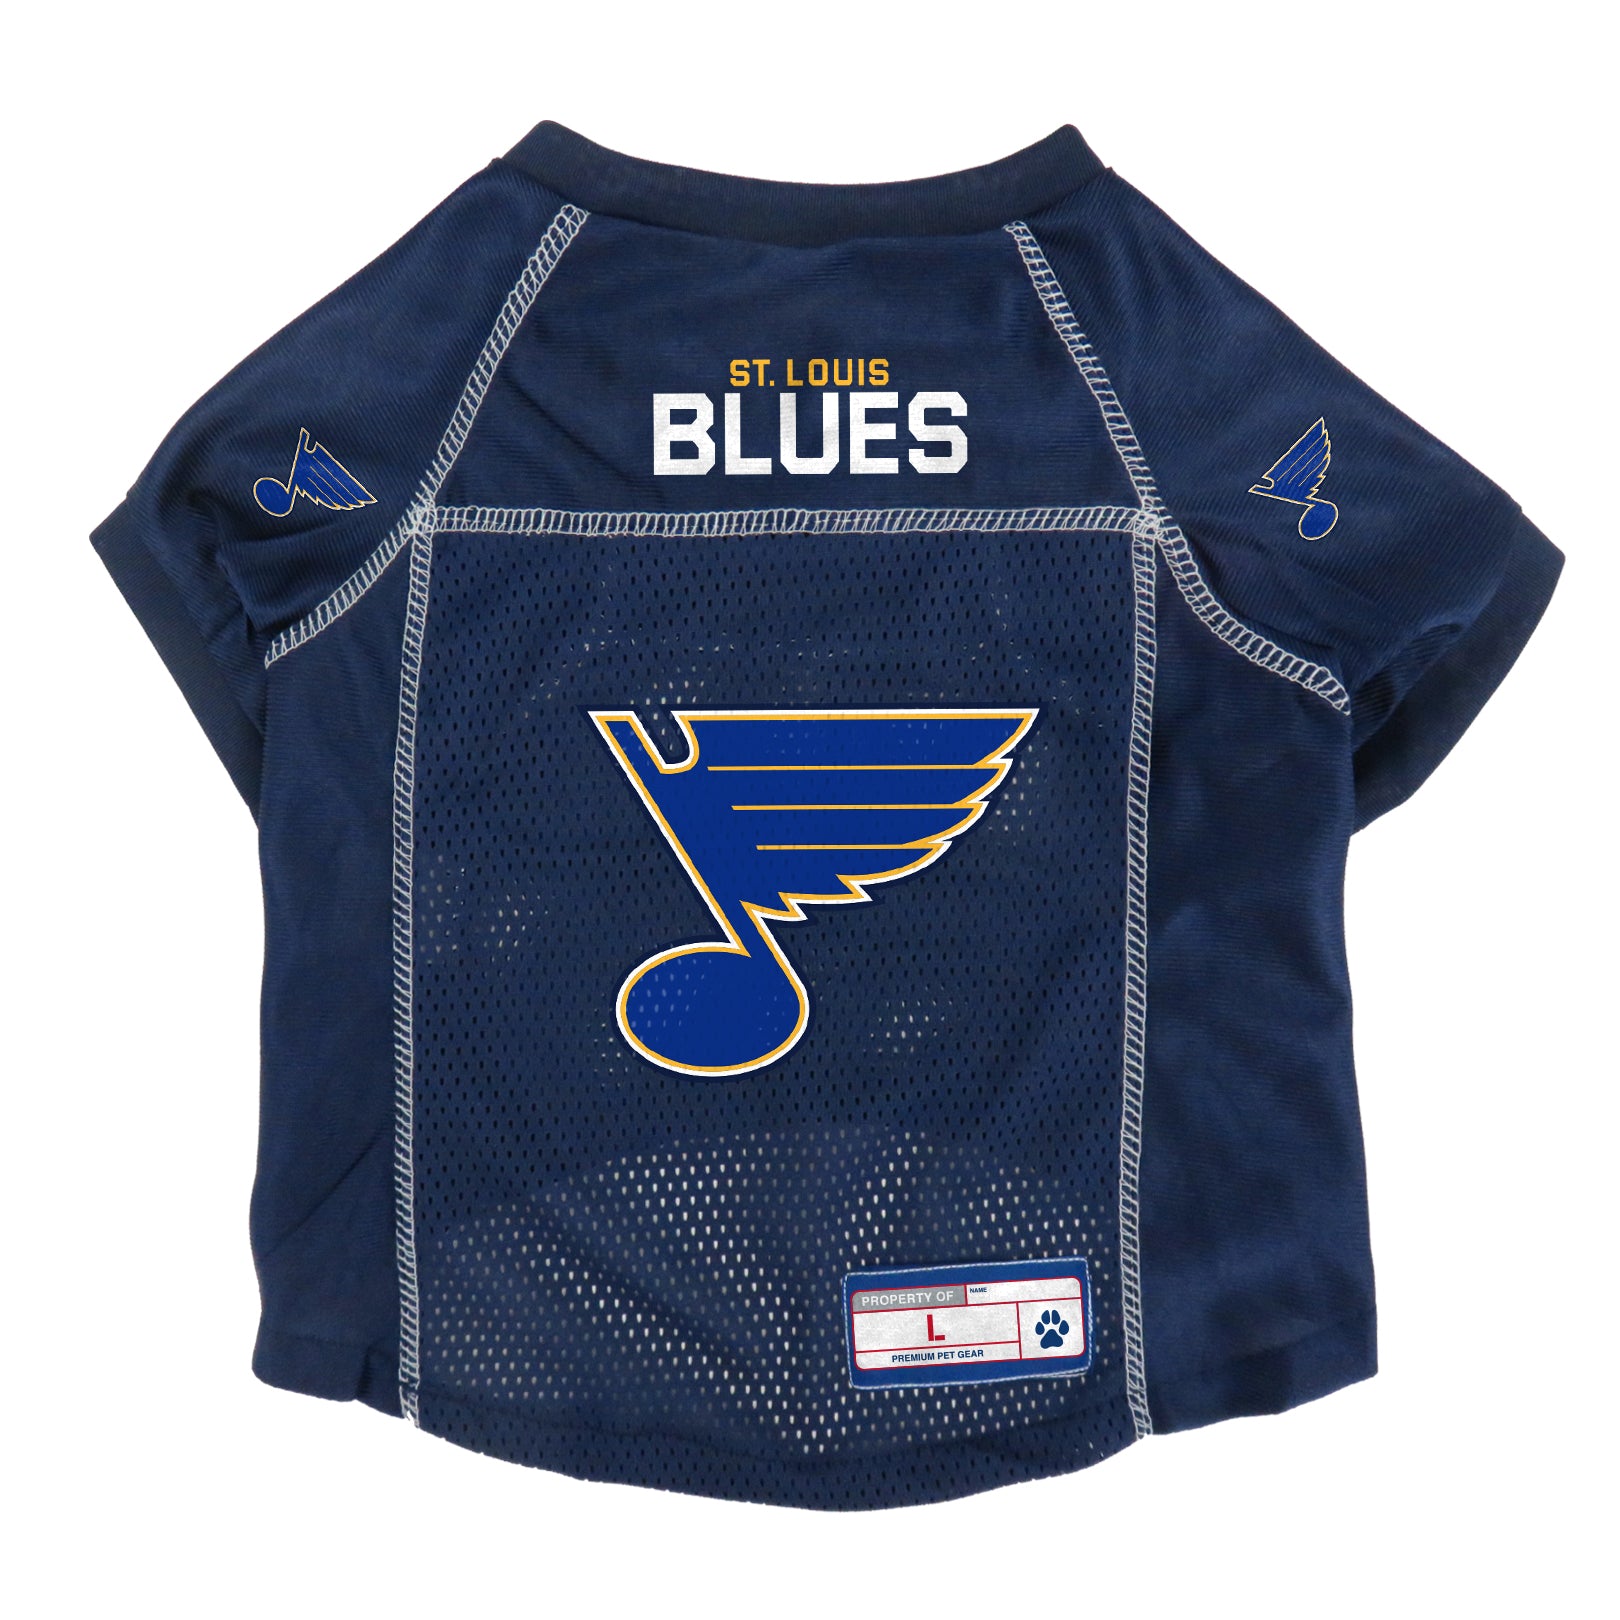 St. Louis Blues Gear, Blues Jerseys, St. Louis Blues Apparel